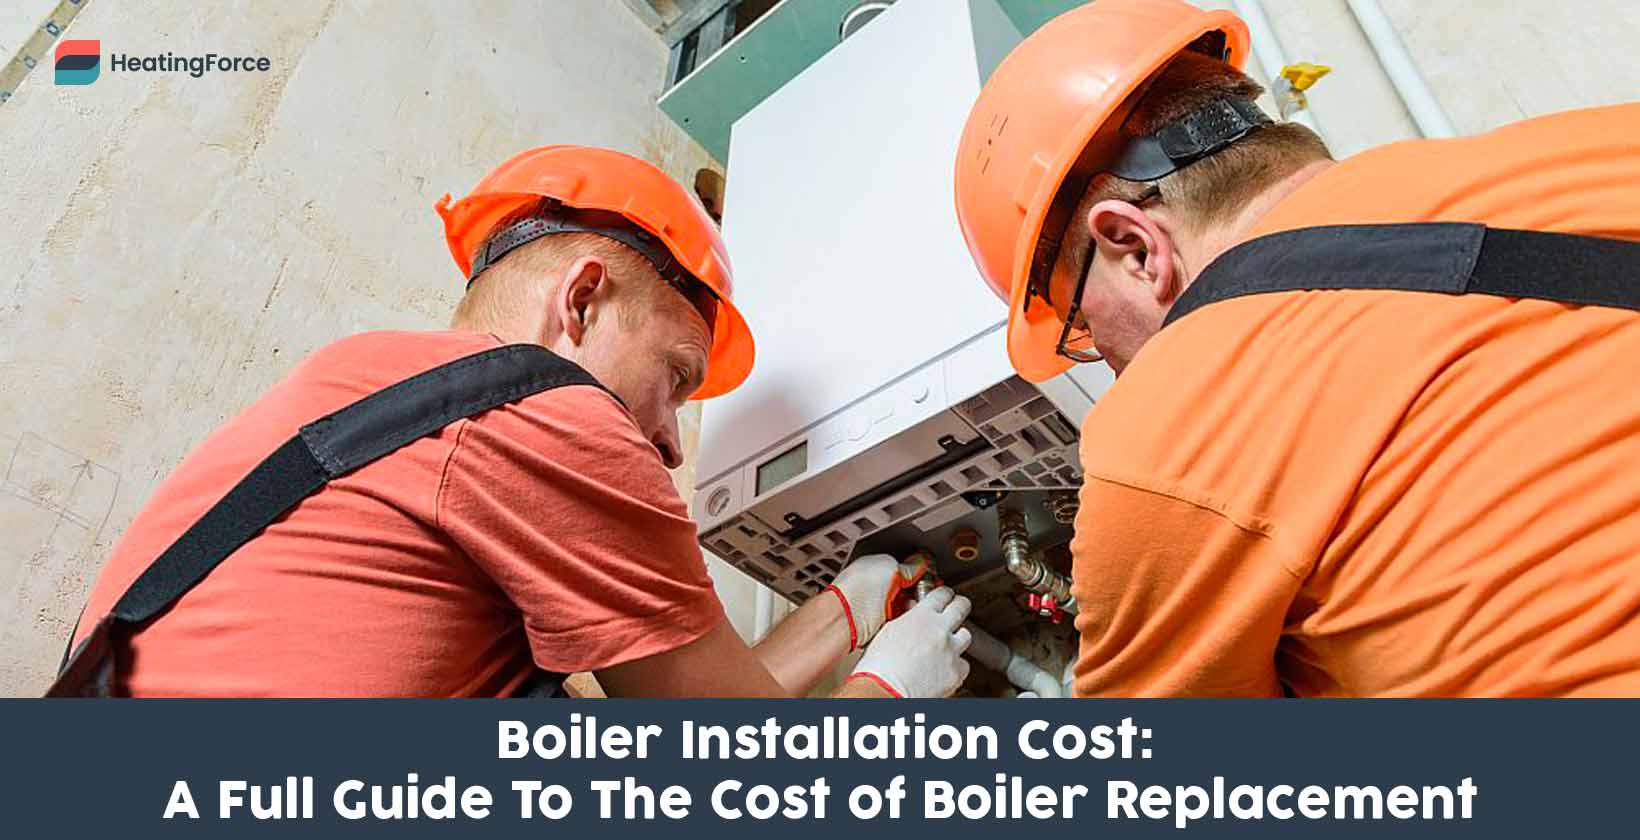 Boiler installation cost